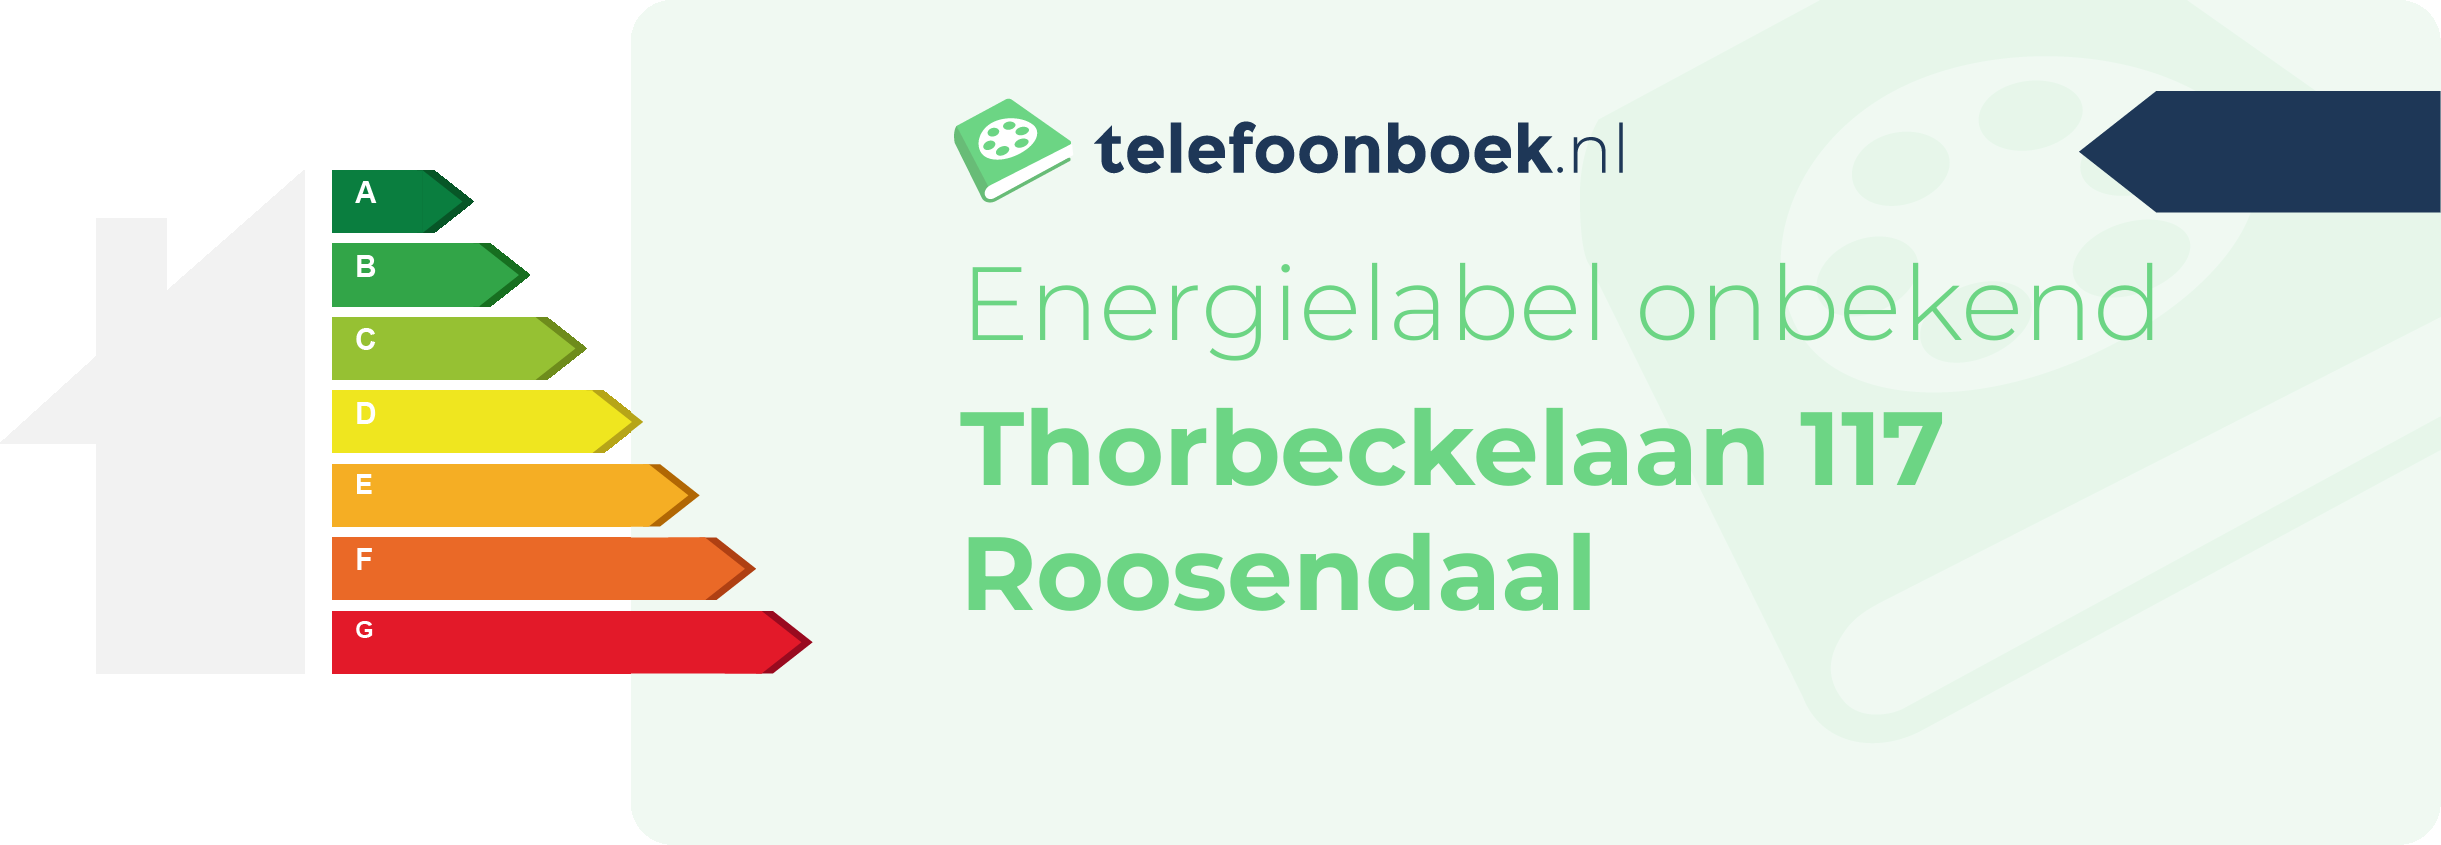 Energielabel Thorbeckelaan 117 Roosendaal